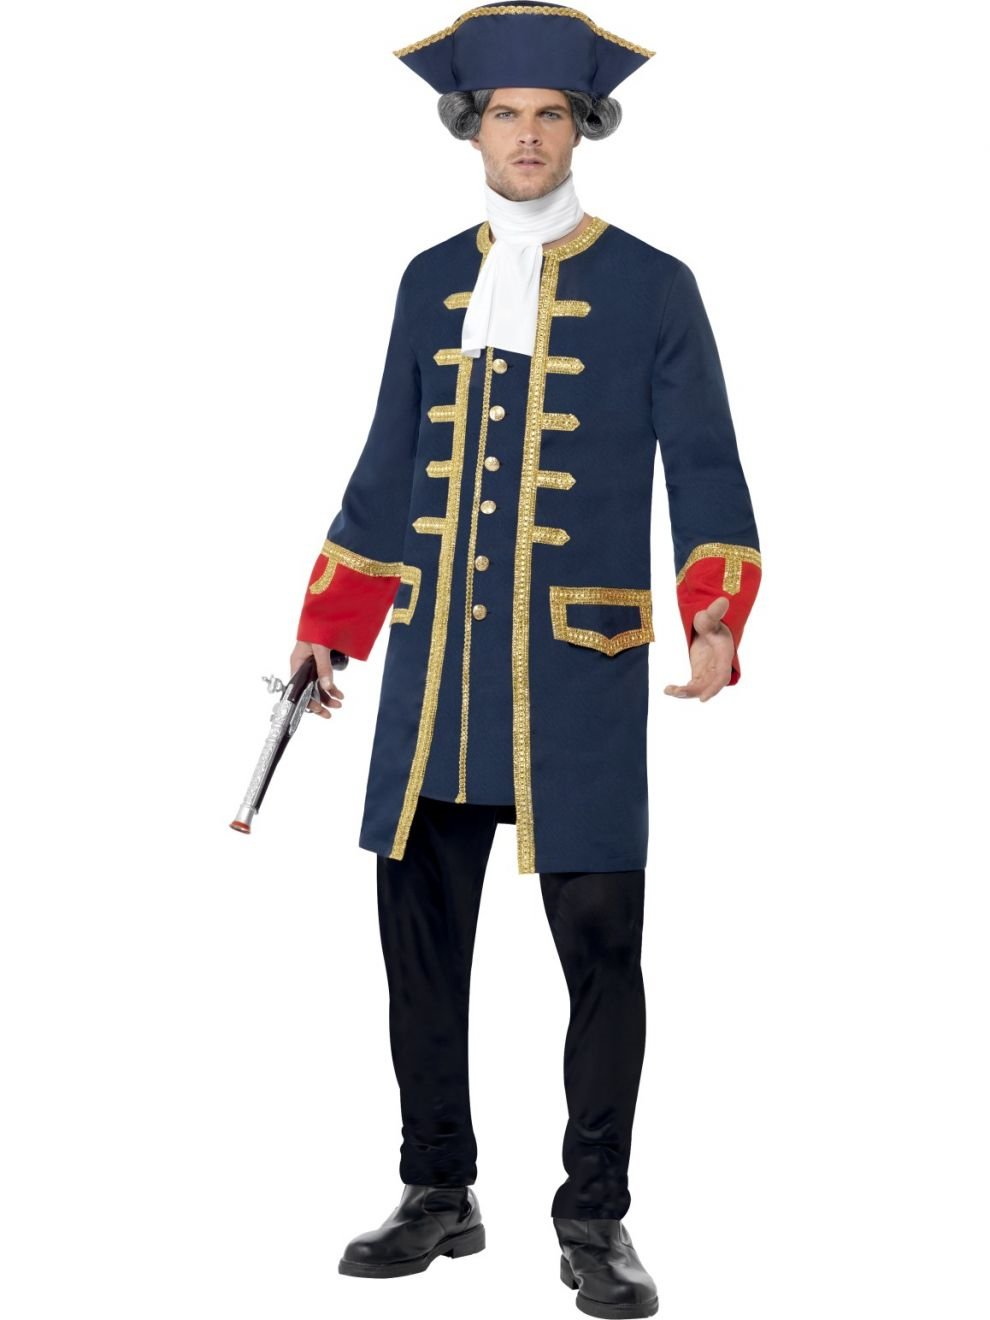 Costume Adult Pirate Commander Blue Medium